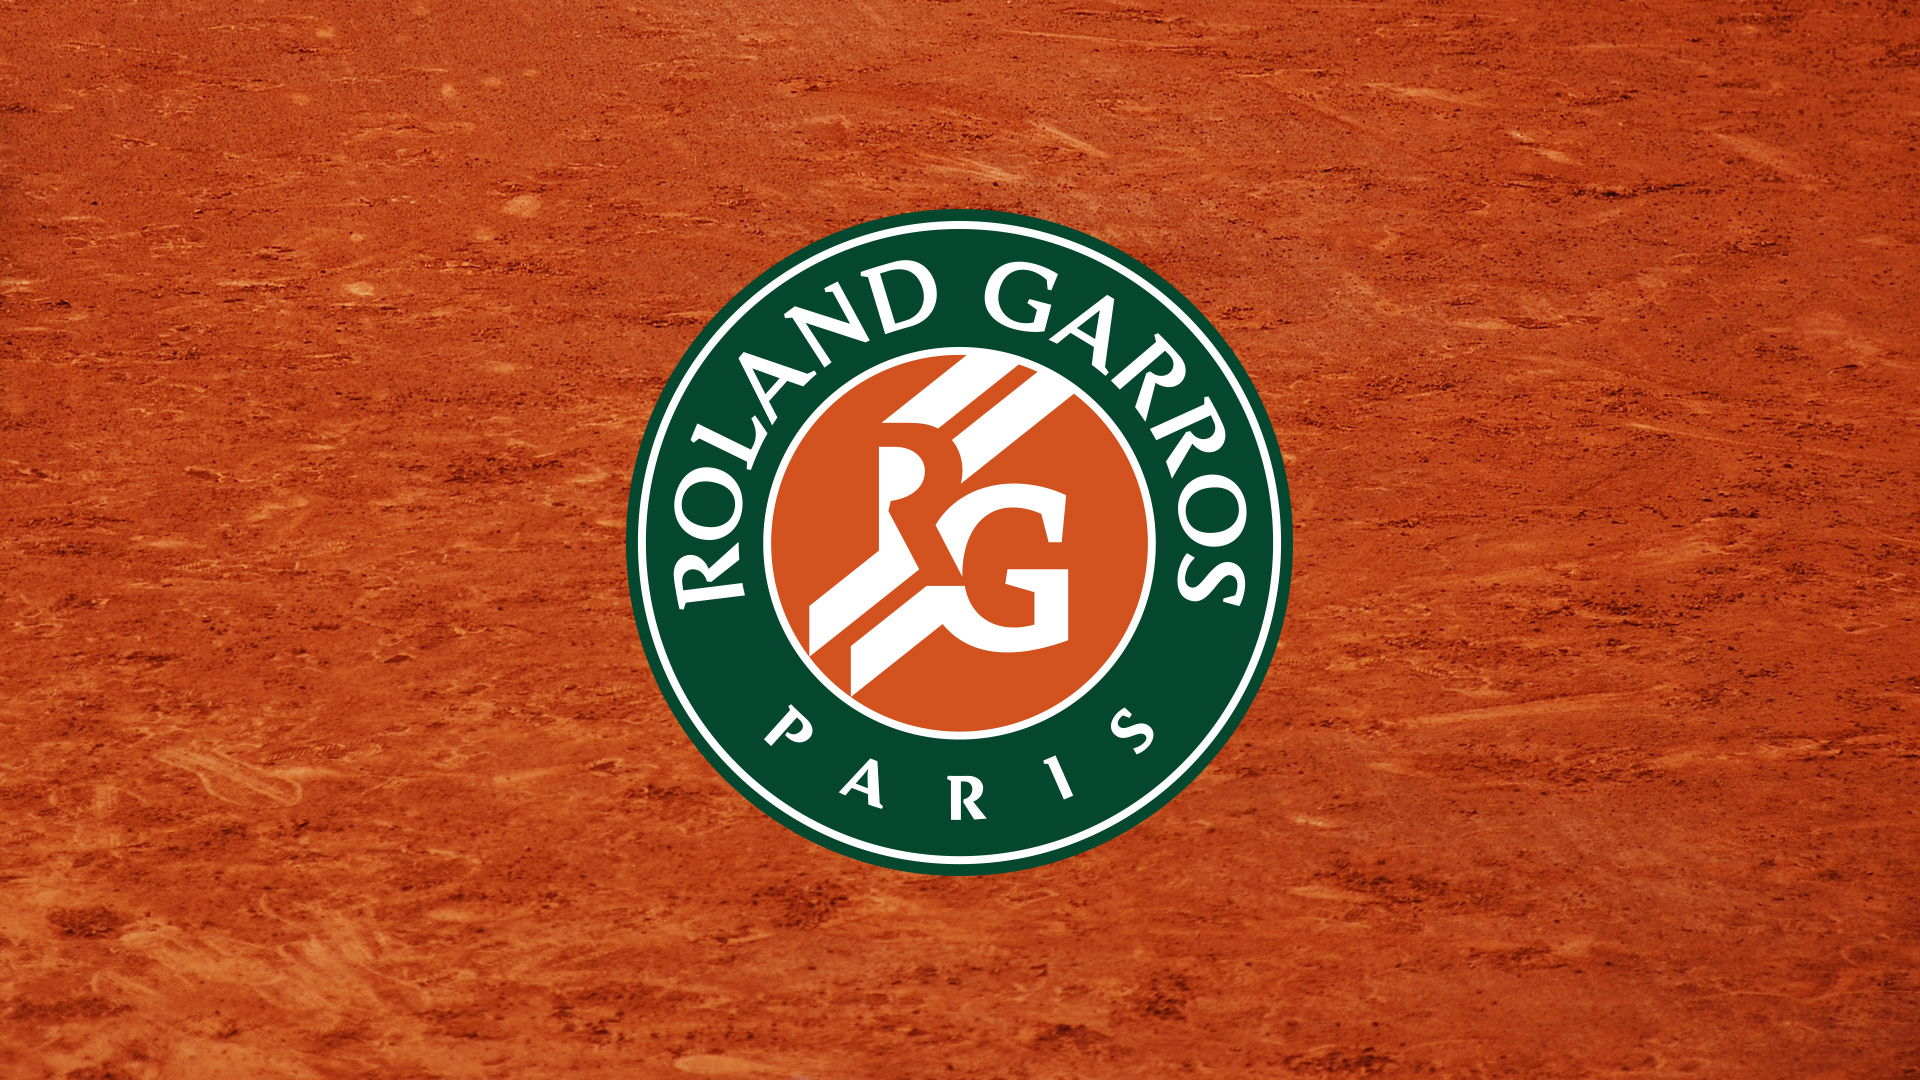 Le palmarès de Roland Garros : simple hommes